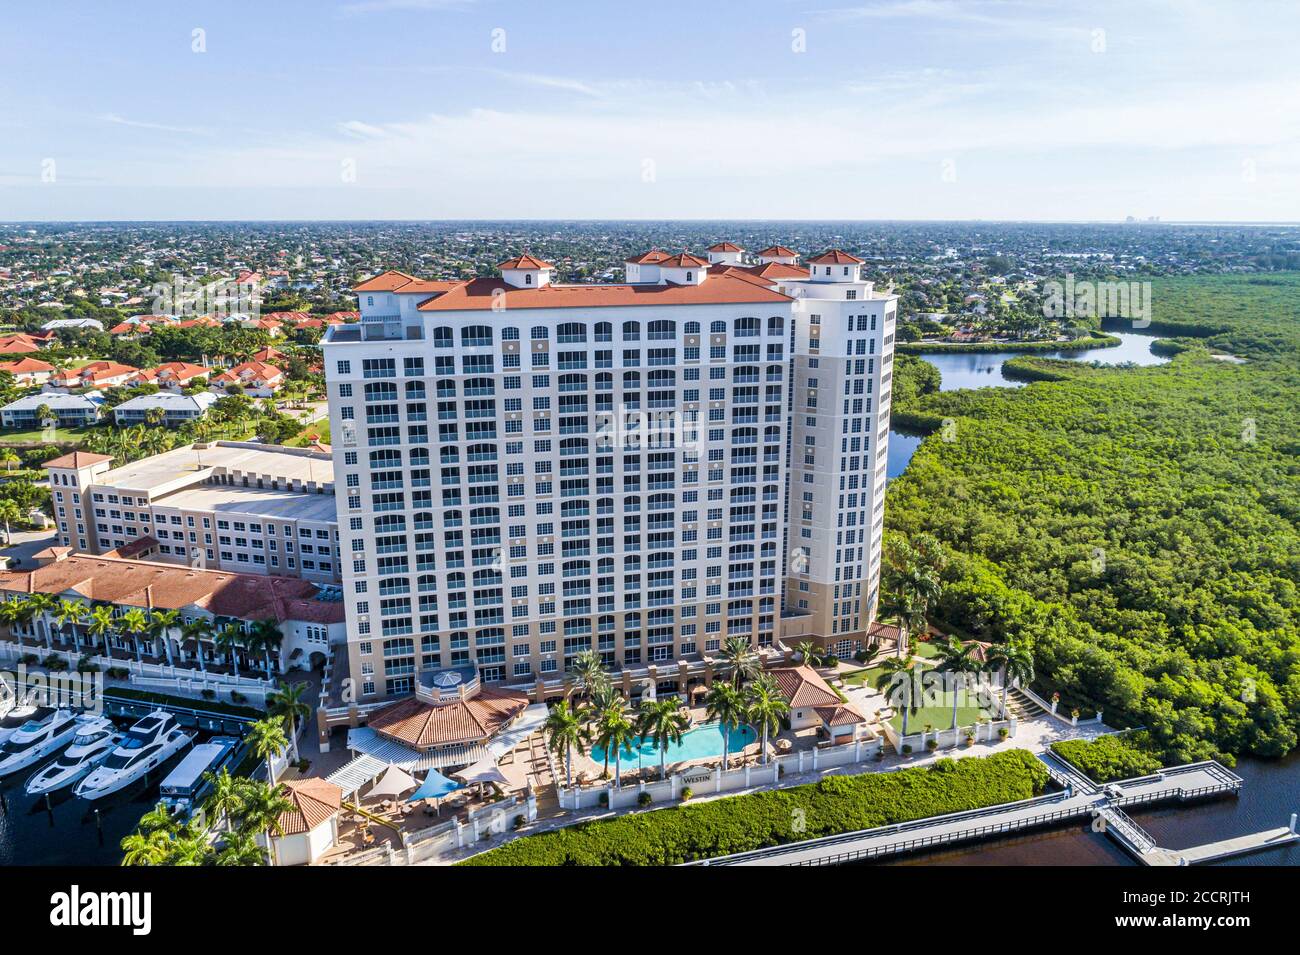 Cape Coral Florida, le Westin Cape Coral Resort à Marina Village, hôtels hôtels hôtels motels inn motels, vue aérienne d'oiseau au-dessus, visiteurs Banque D'Images